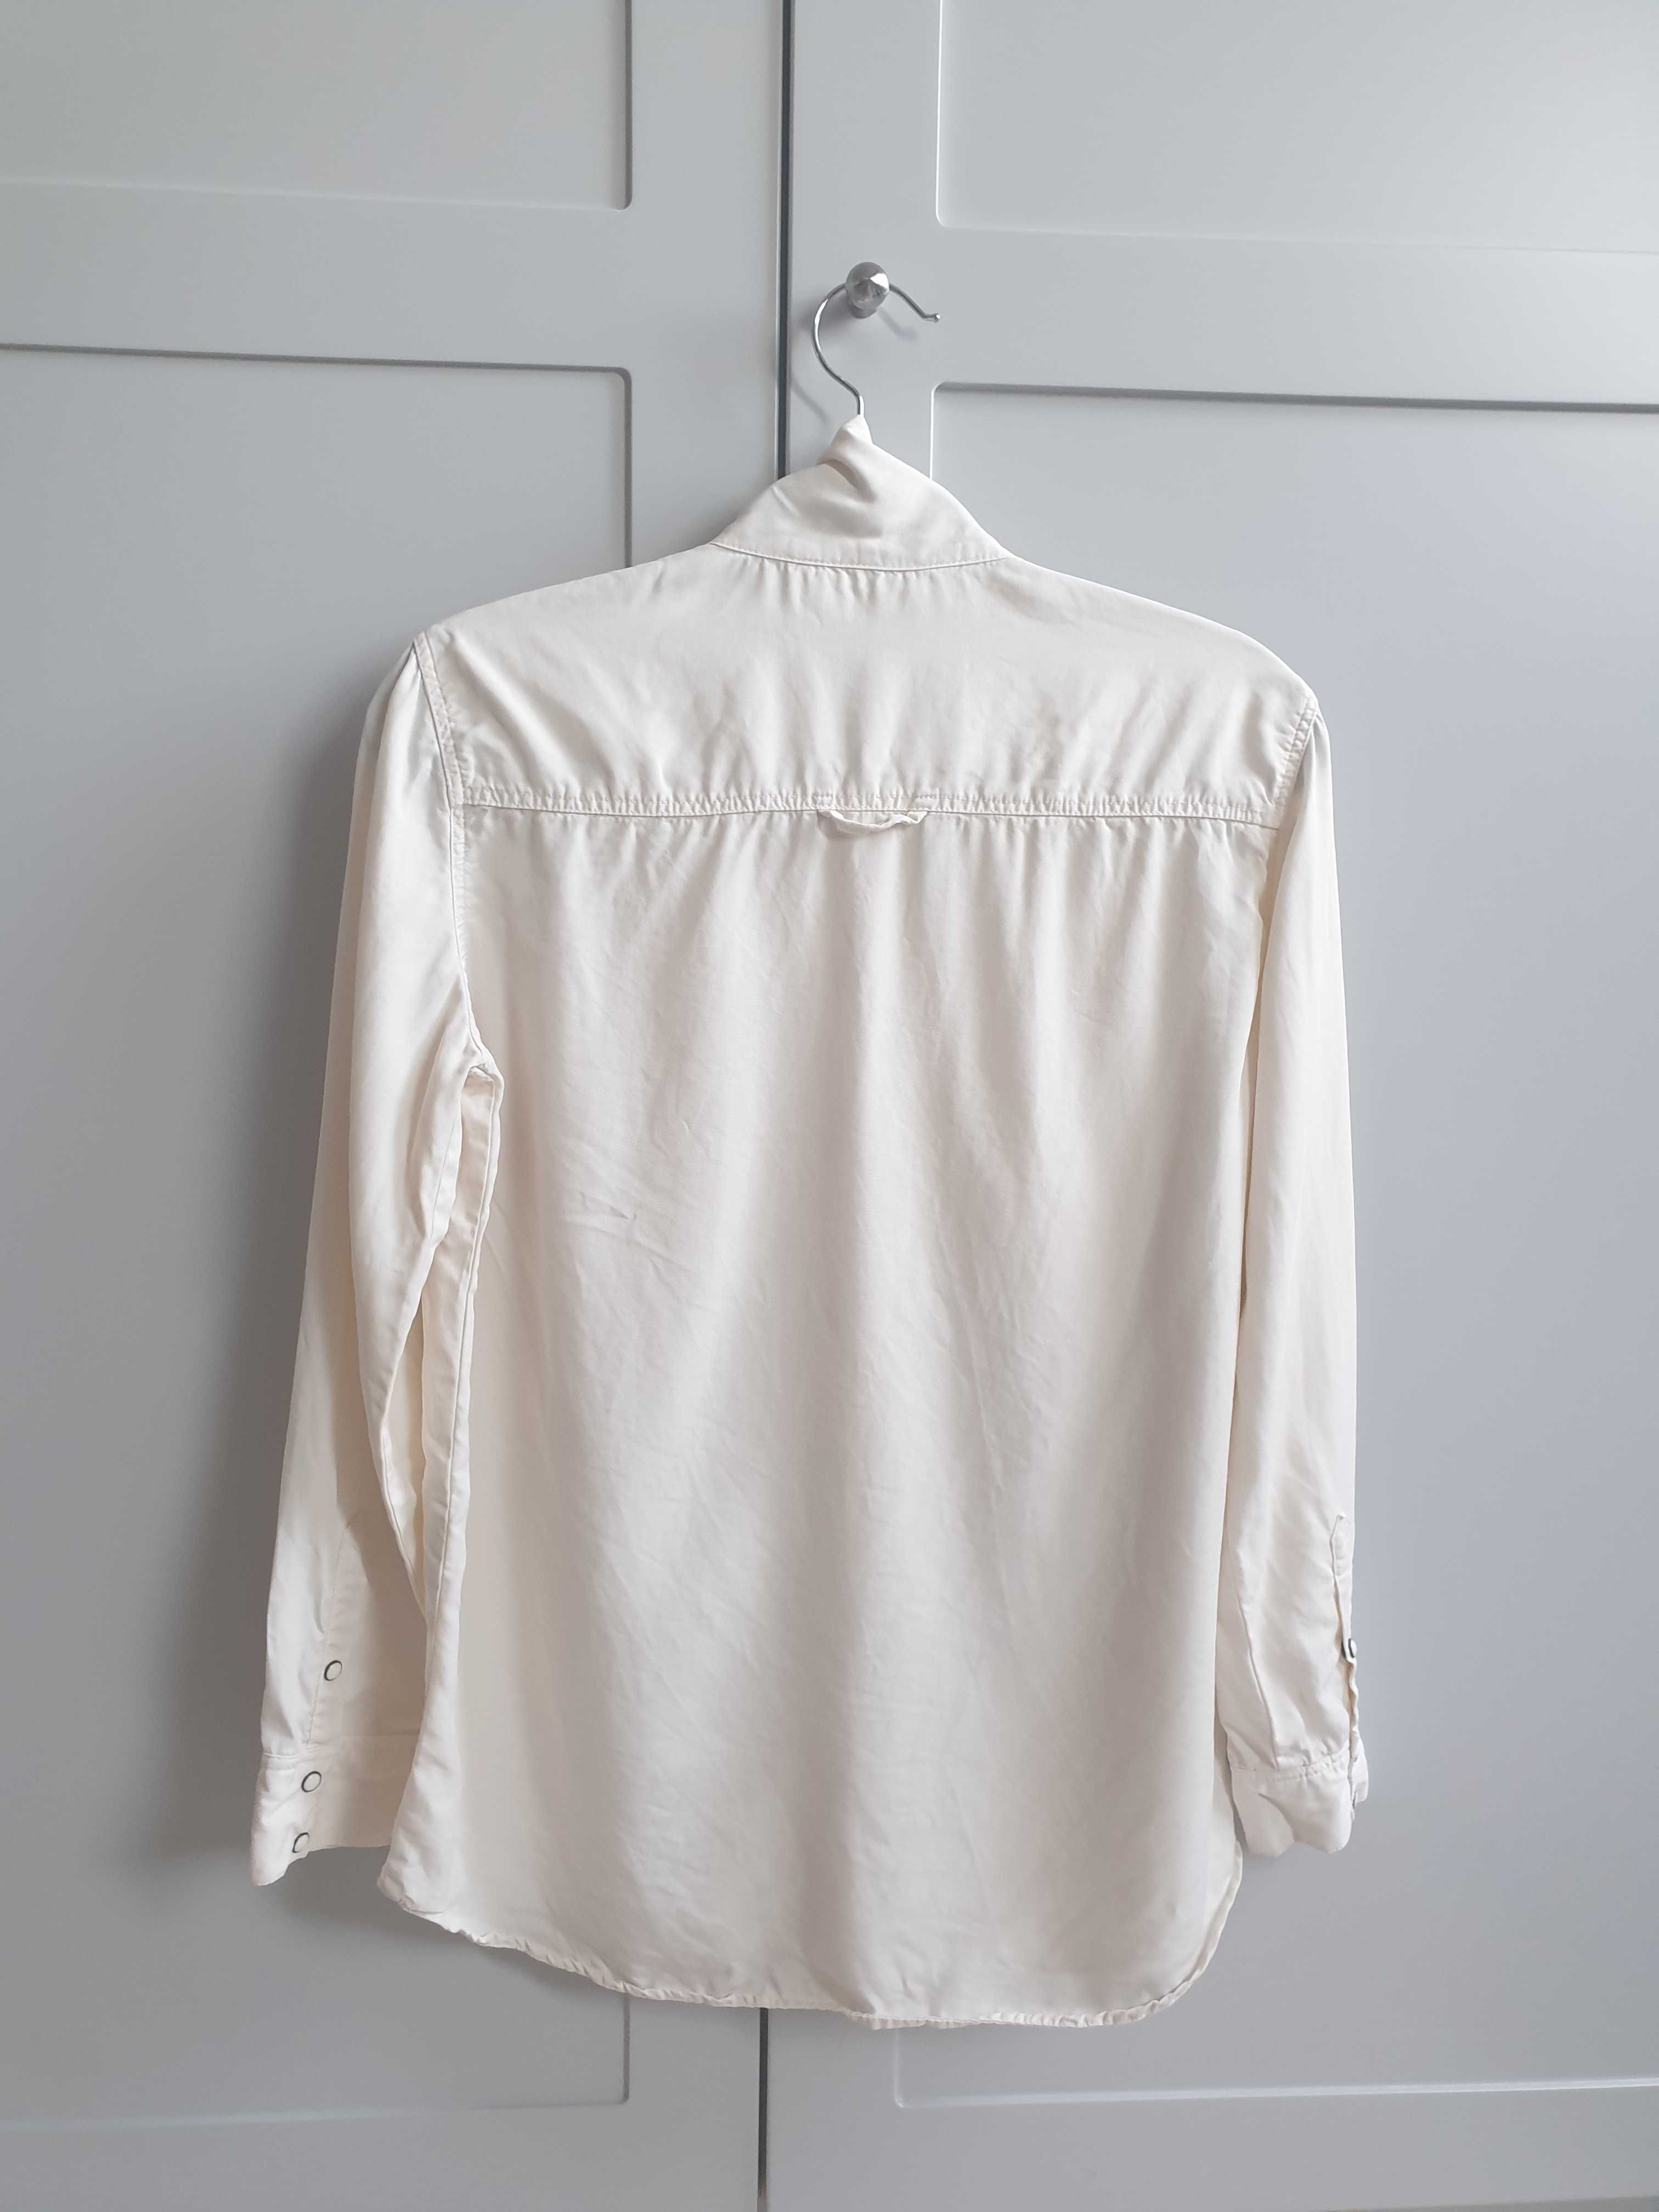 Beżowa koszula wiązana pod szyją na zatrzaski Zara 36 38 S z tencelu